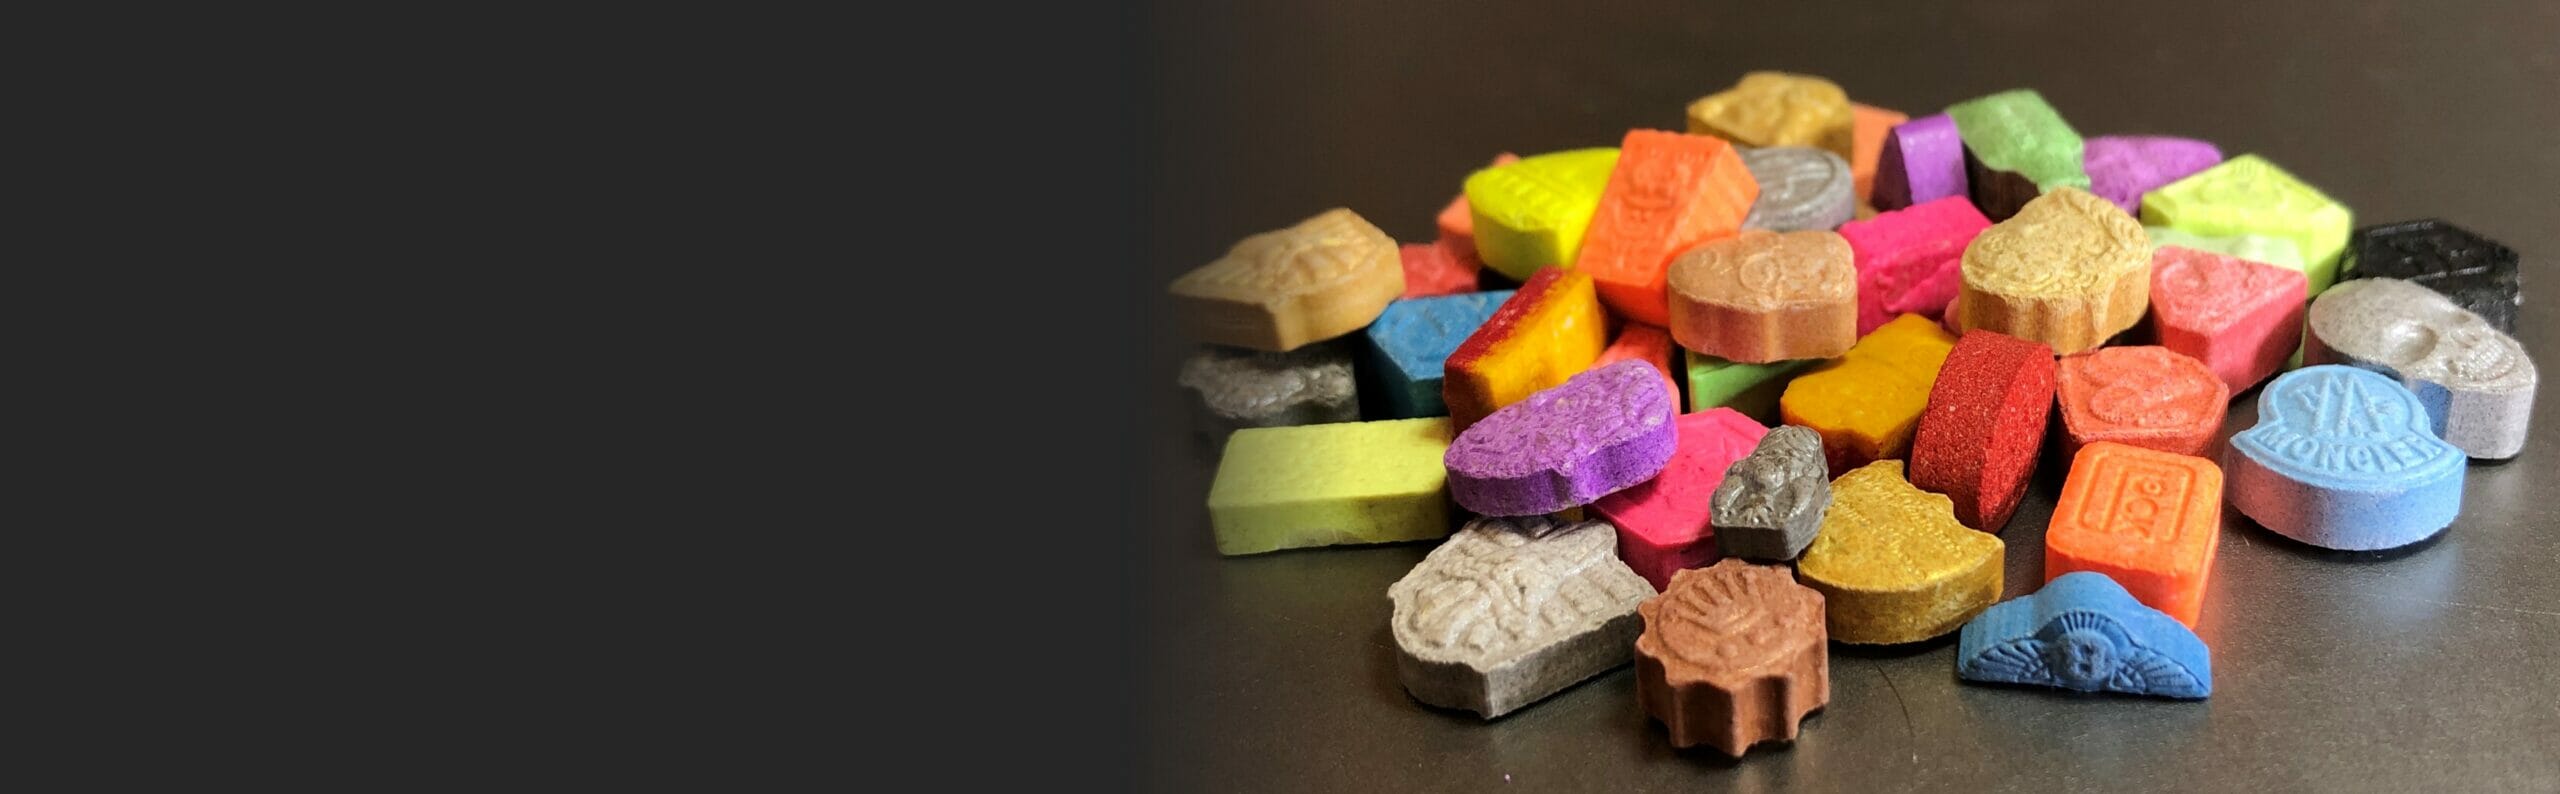 www.drugs-test.nl